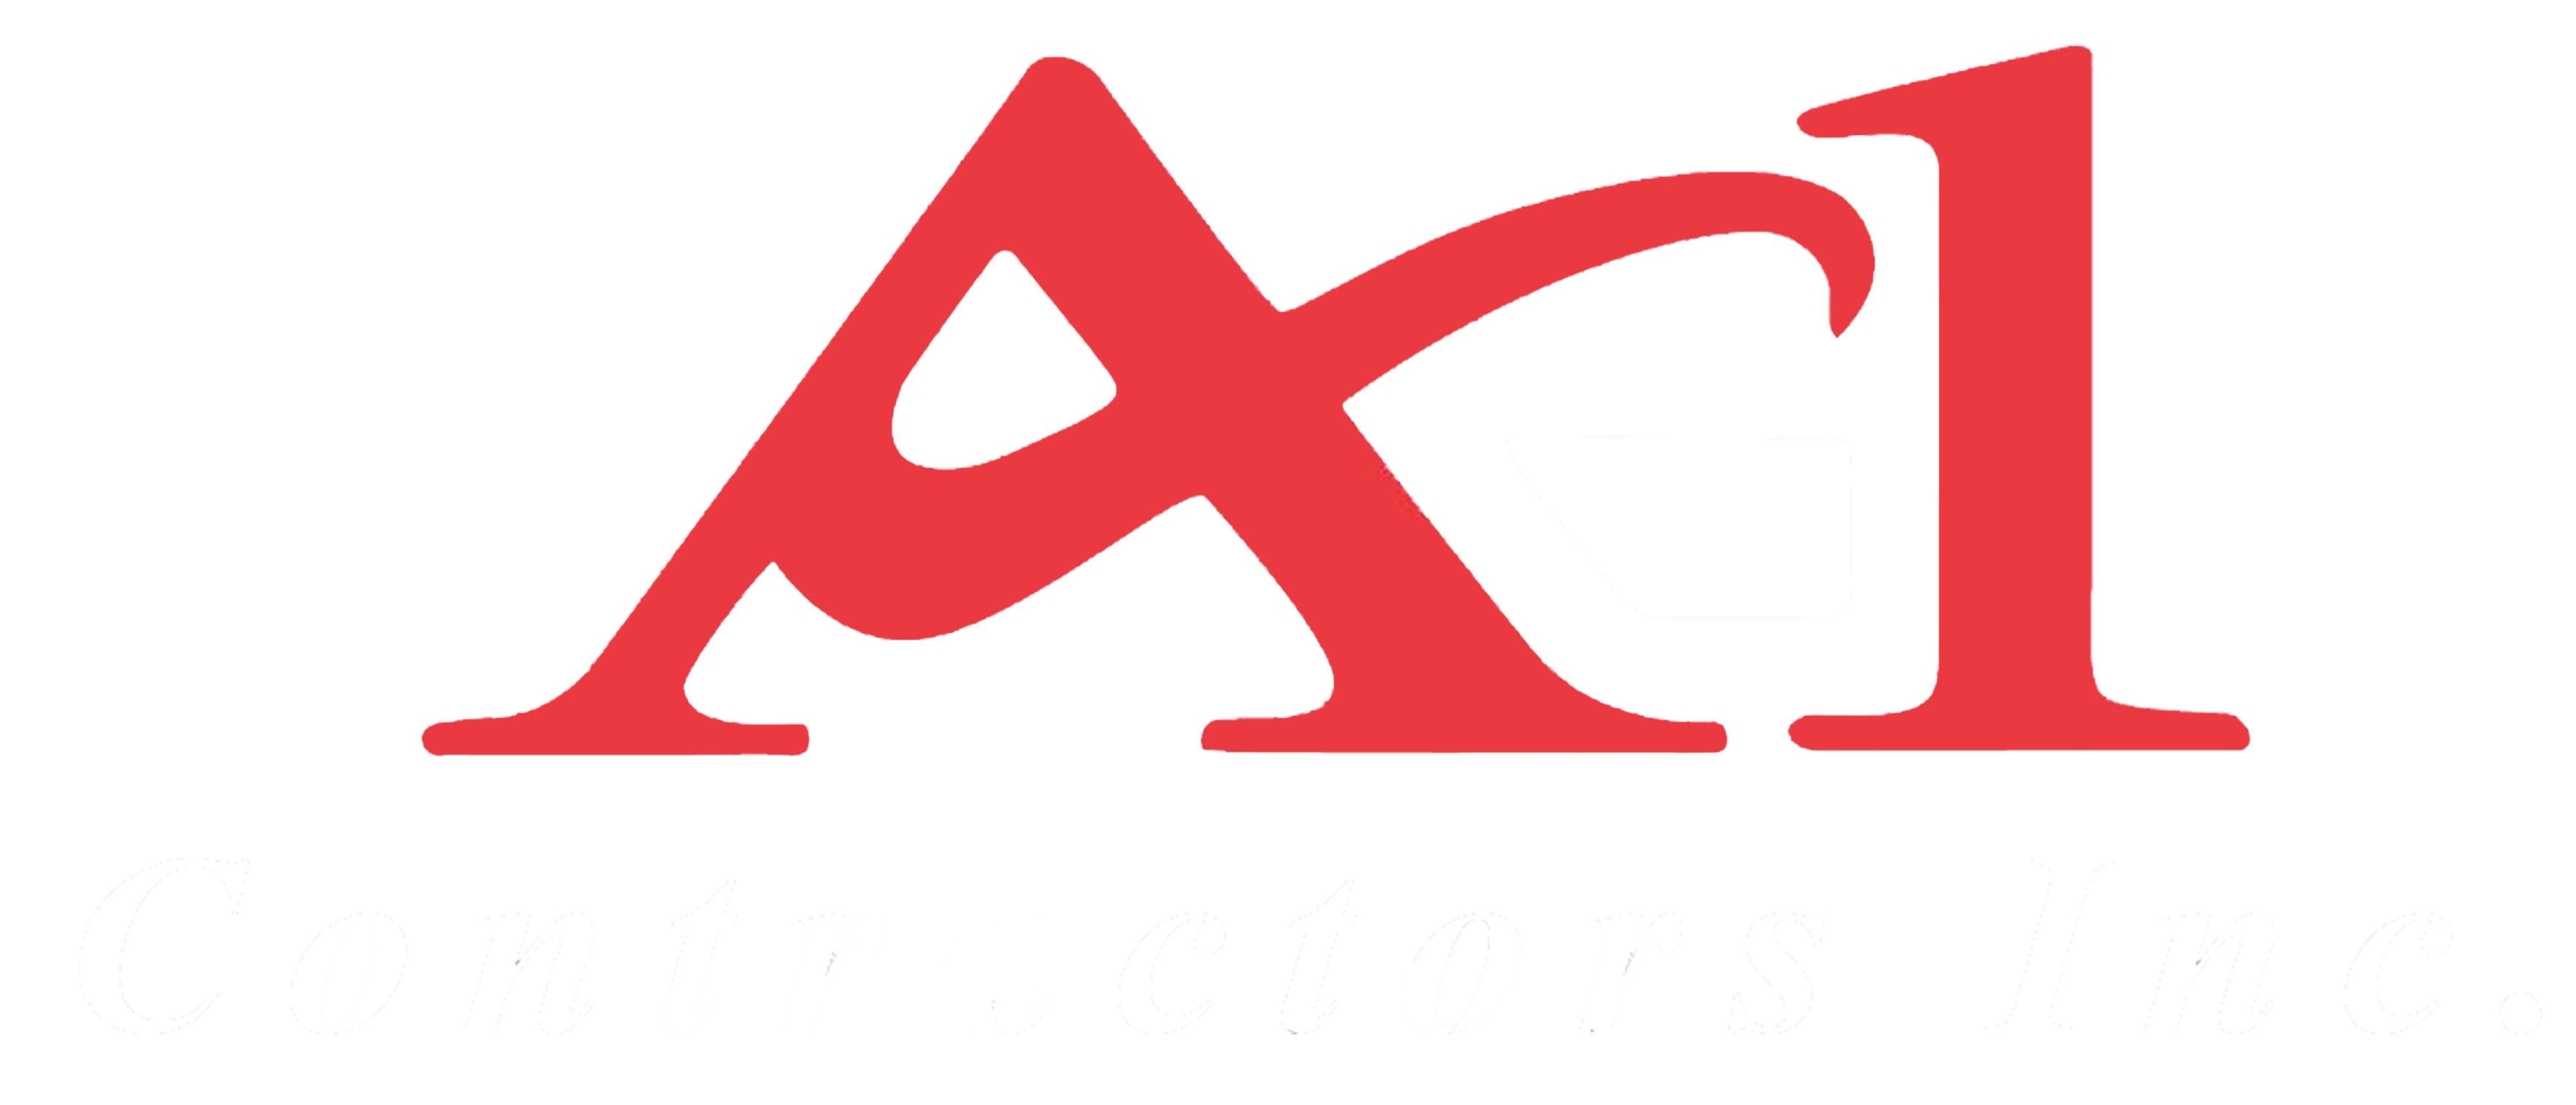 A-1 Contractors Inc